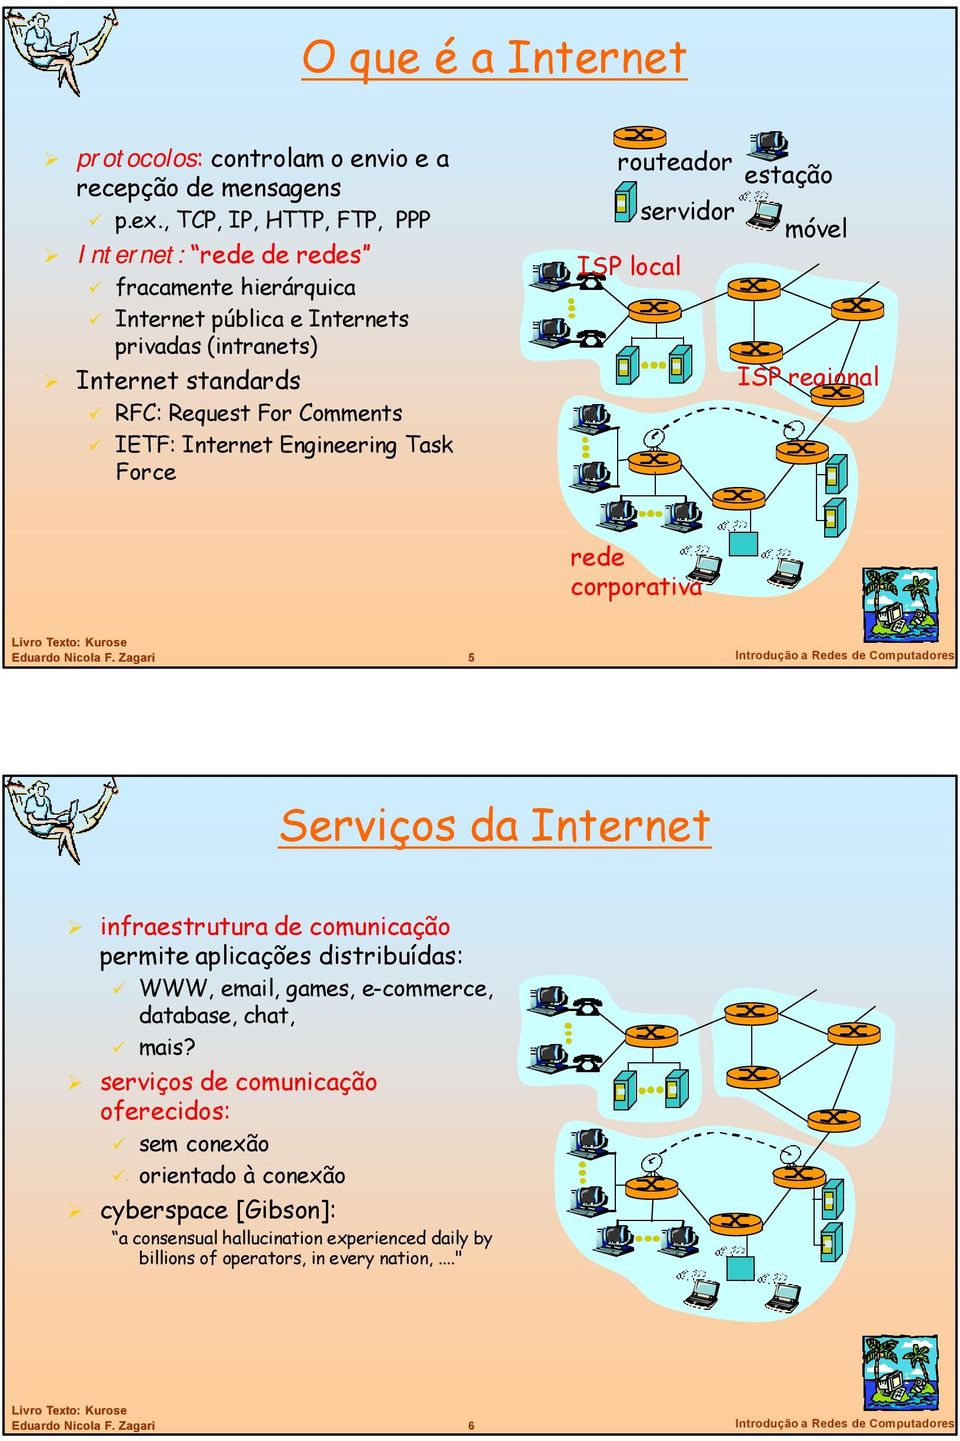 Engineering Task Force routeador estação servidor móvel ISP local ISP regional corporativa 5 Introdução a Redes de Computadores Serviços da Internet infraestrutura de comunicação